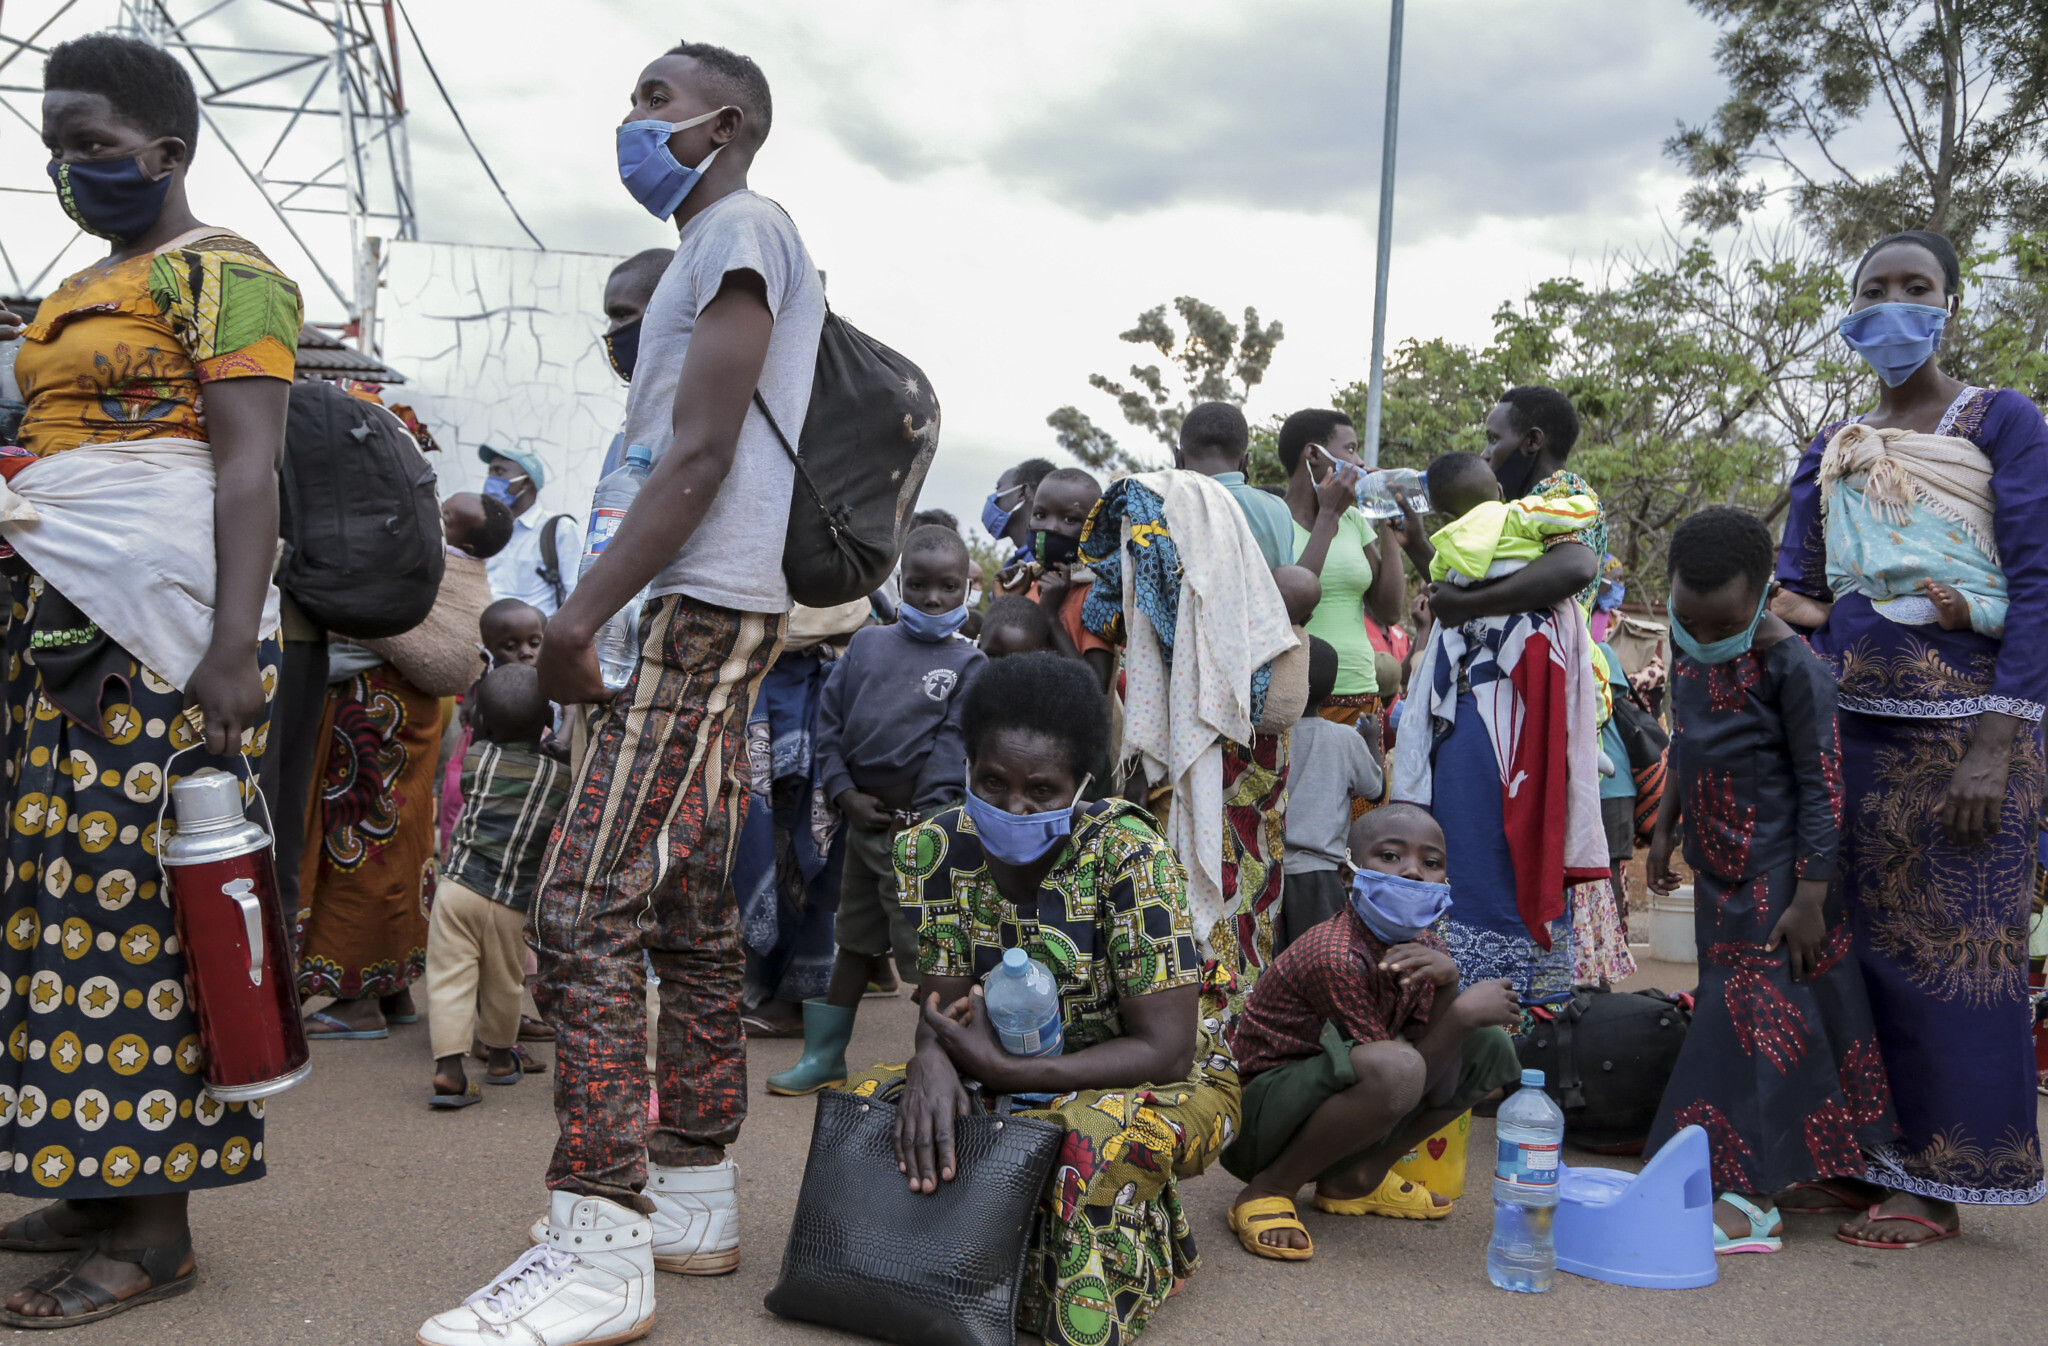 פליטים בורונדים מרואנדה חוזרים לגאסניי, בורונדי, אוגוסט 2020. כמעט 500 פליטים בורונדים המתגוררים ברואנדה החלו את מסעם חזרה לארץ מולדתם, לאחר חמש שנות גלות בעקבות אלימות פוליטית קטלנית (צילום: AP Photo/Berthier Mugiraneza)